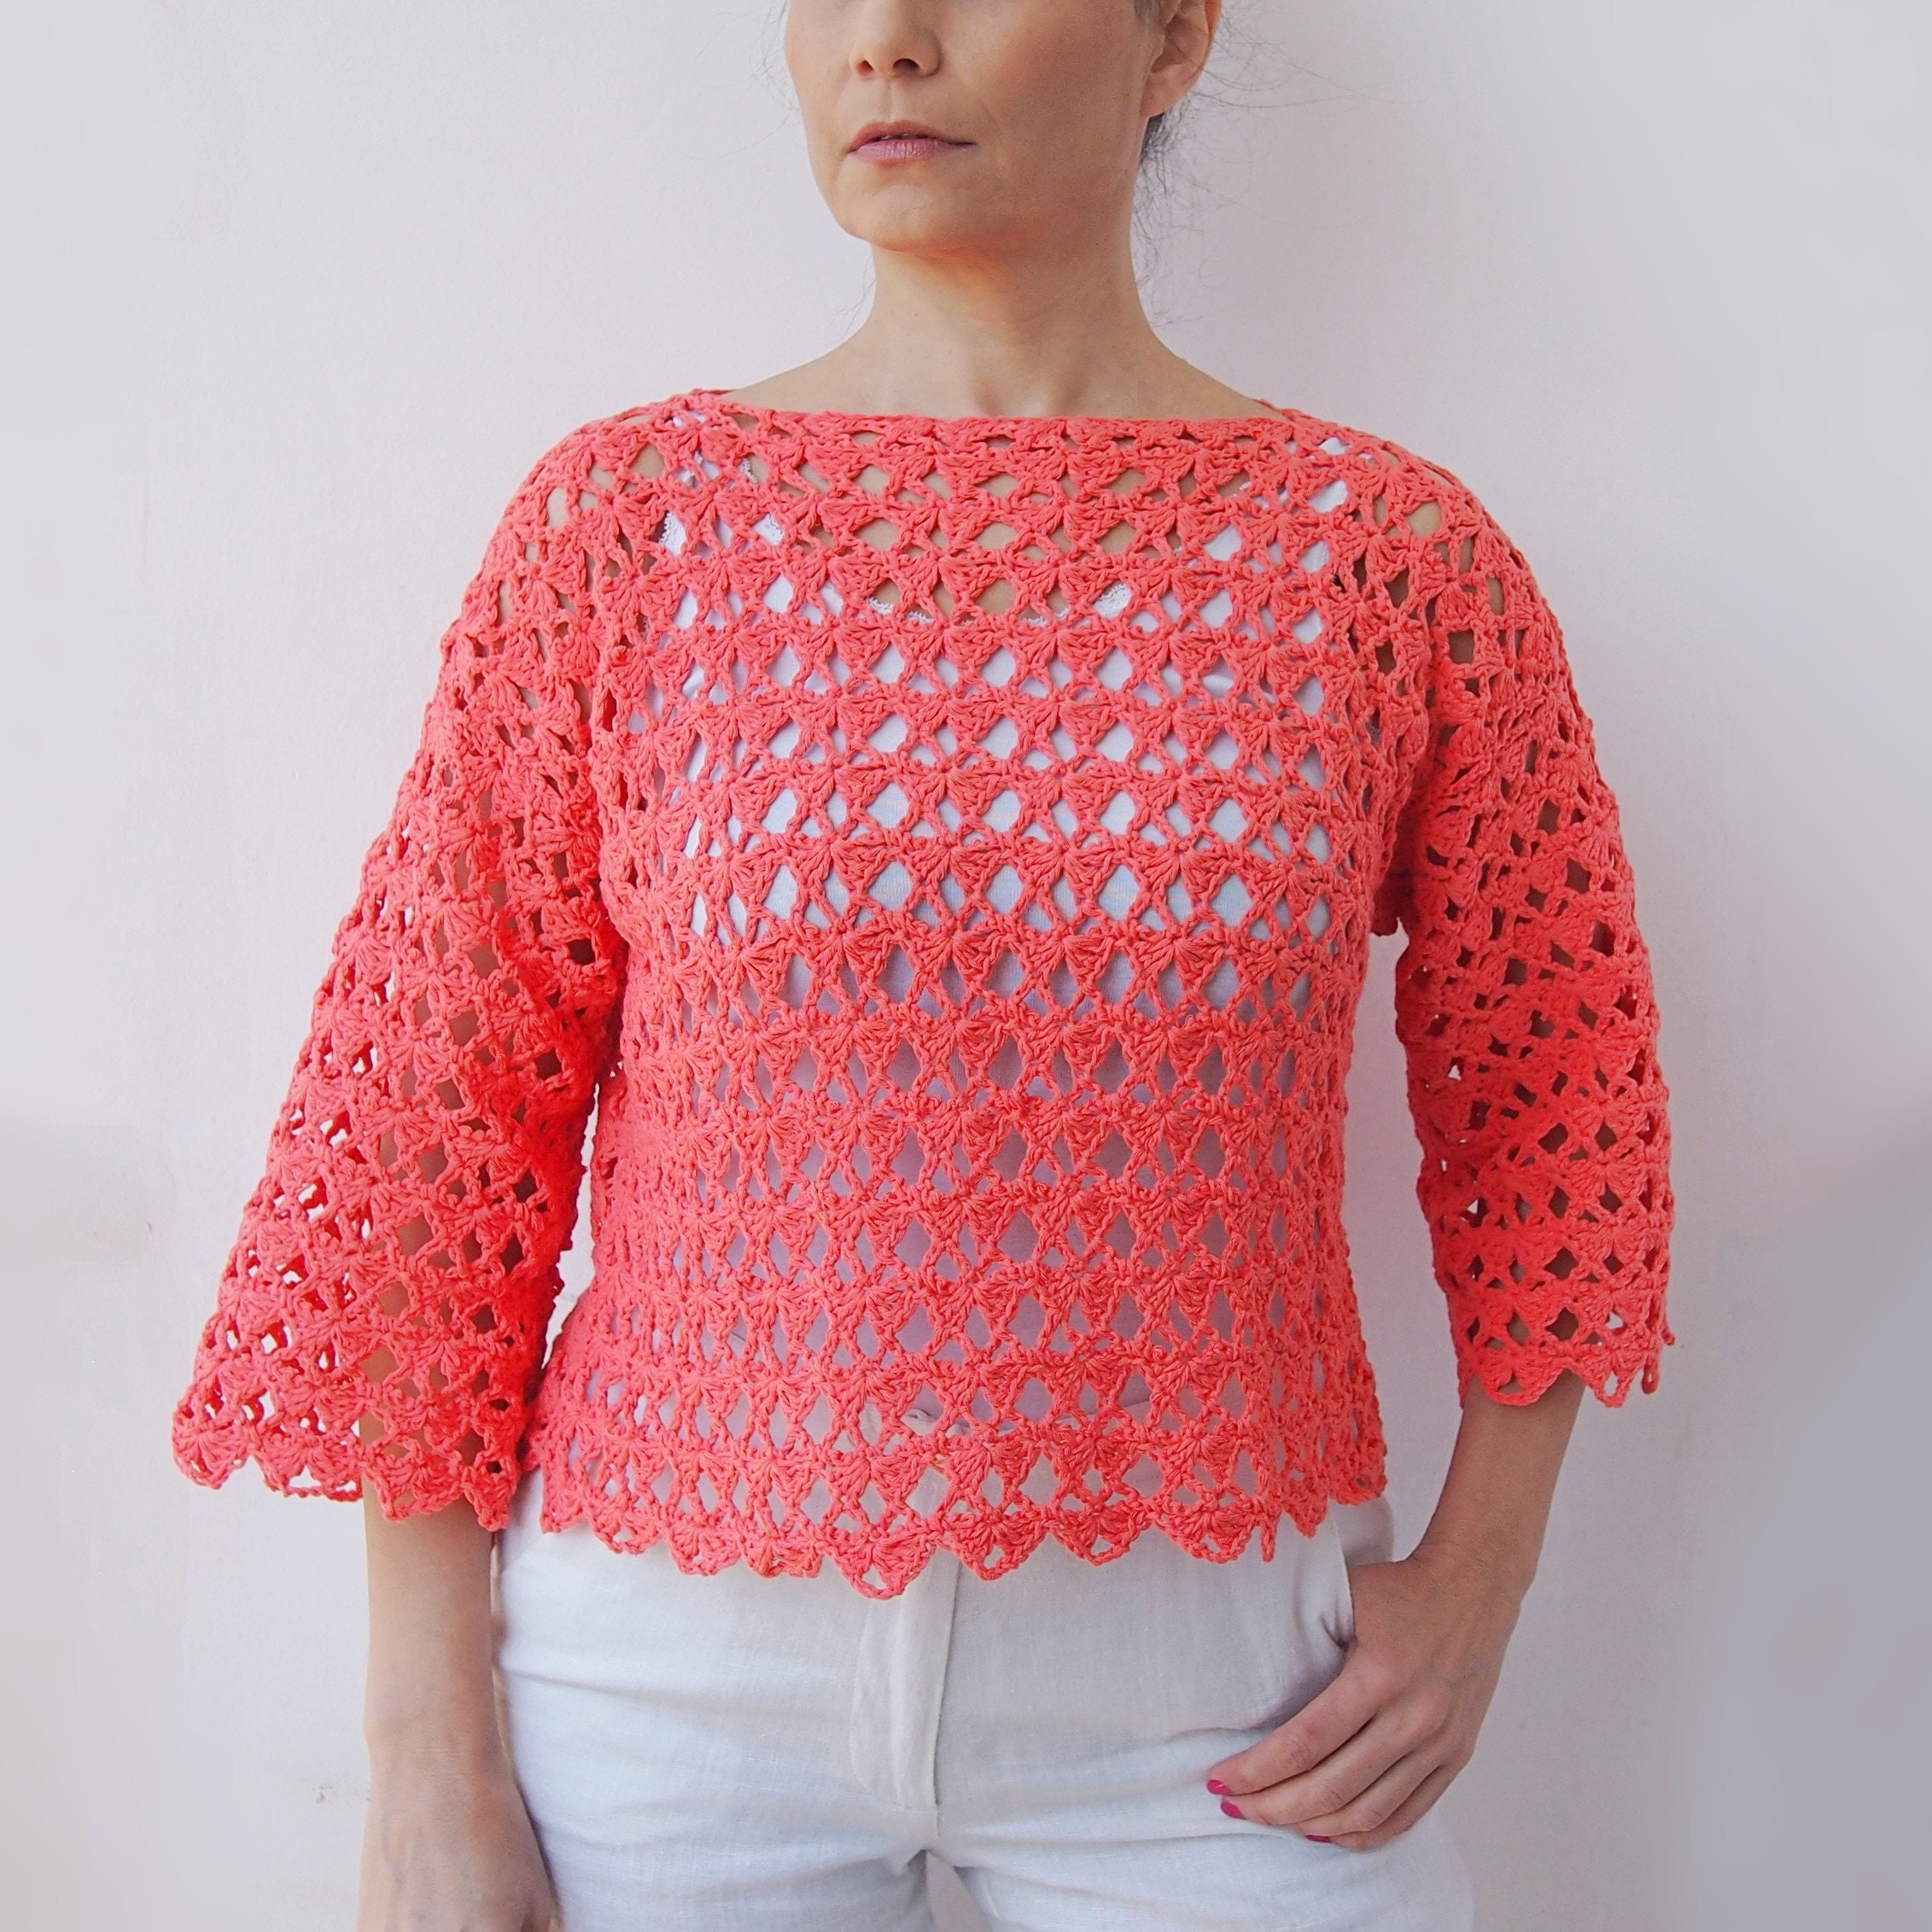 Crochet Pattern Crete Sweater Women Pullover Lace Top | Etsy